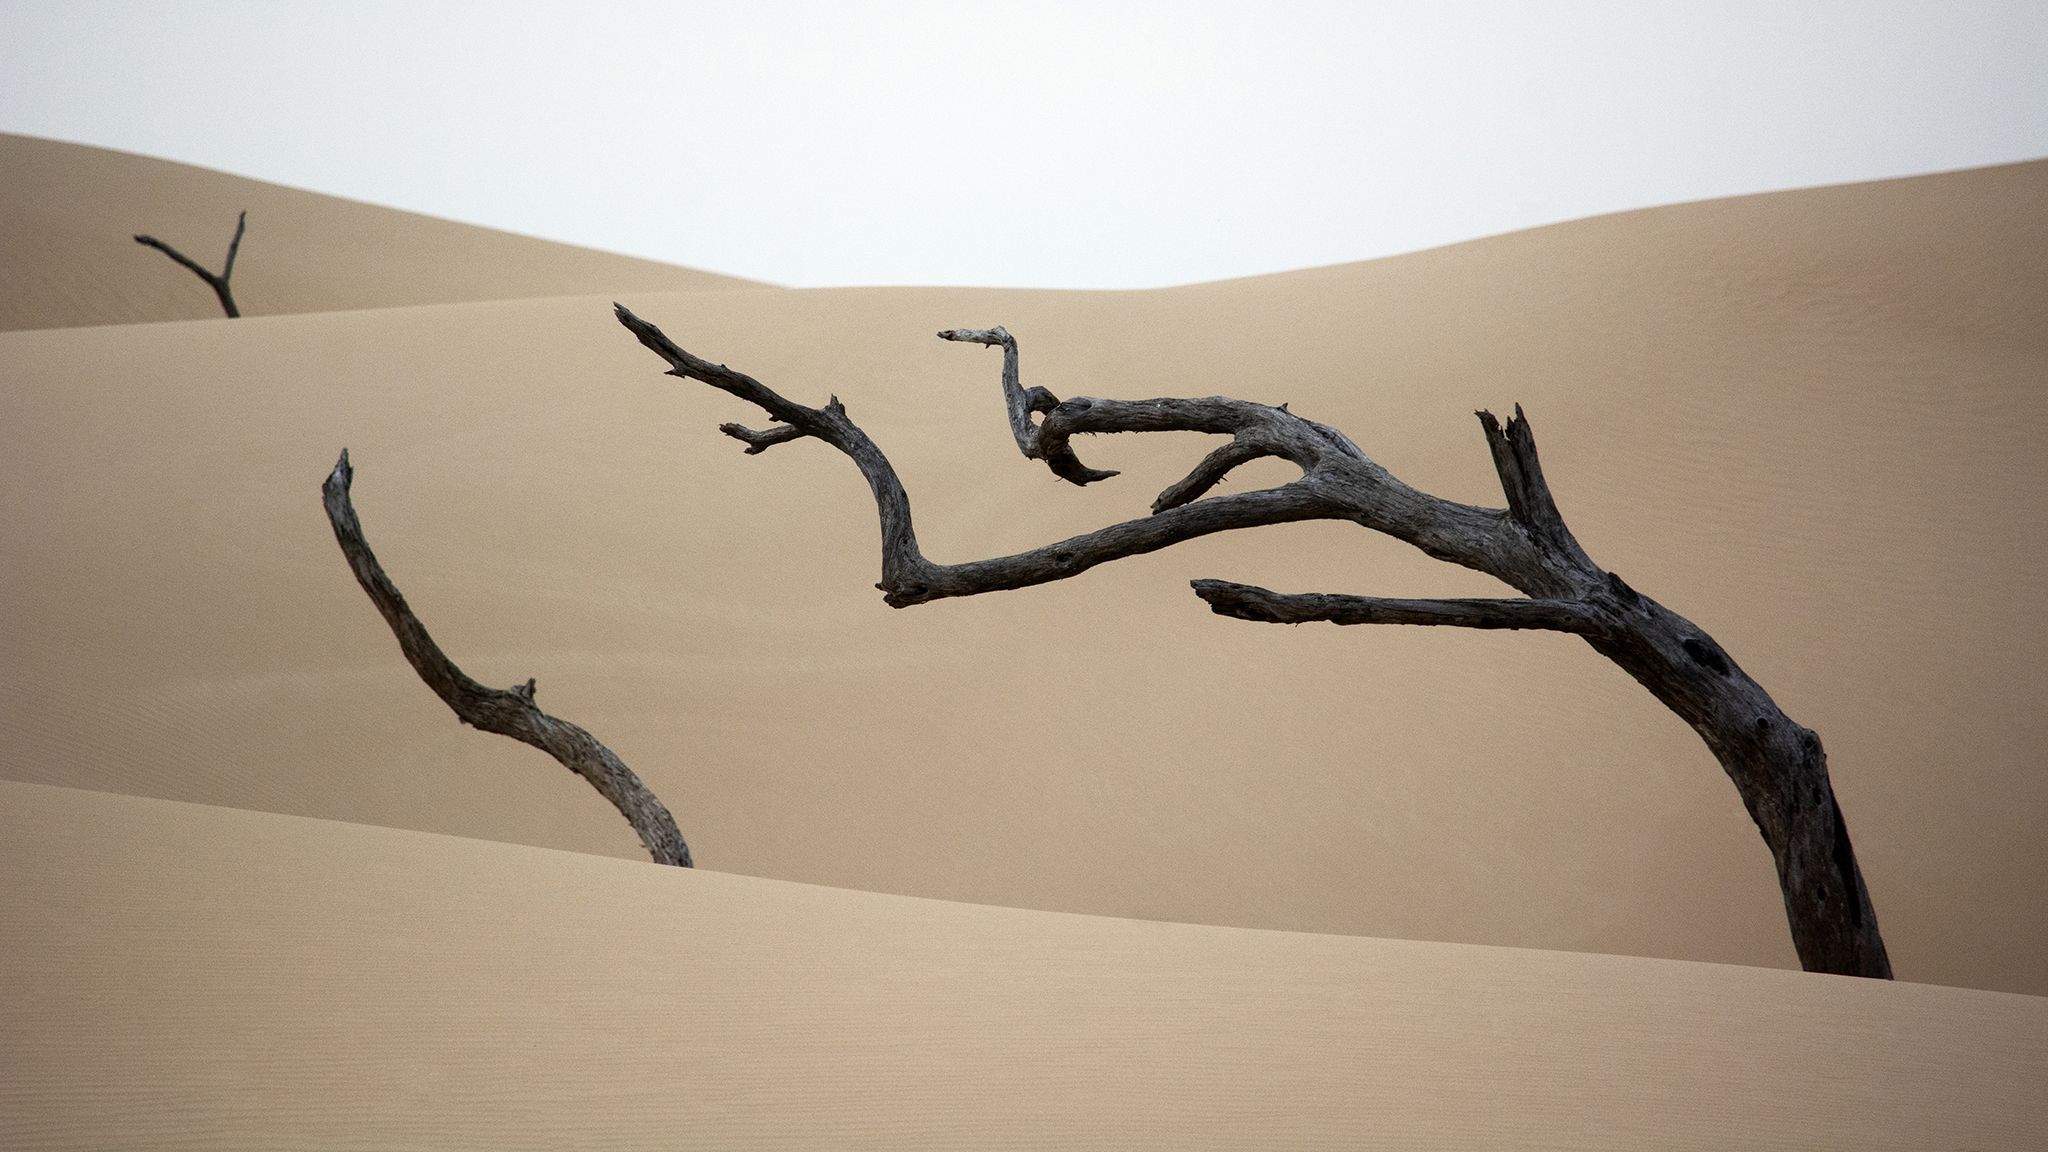 Desert Sand Beige Dead Trees 2048x1152